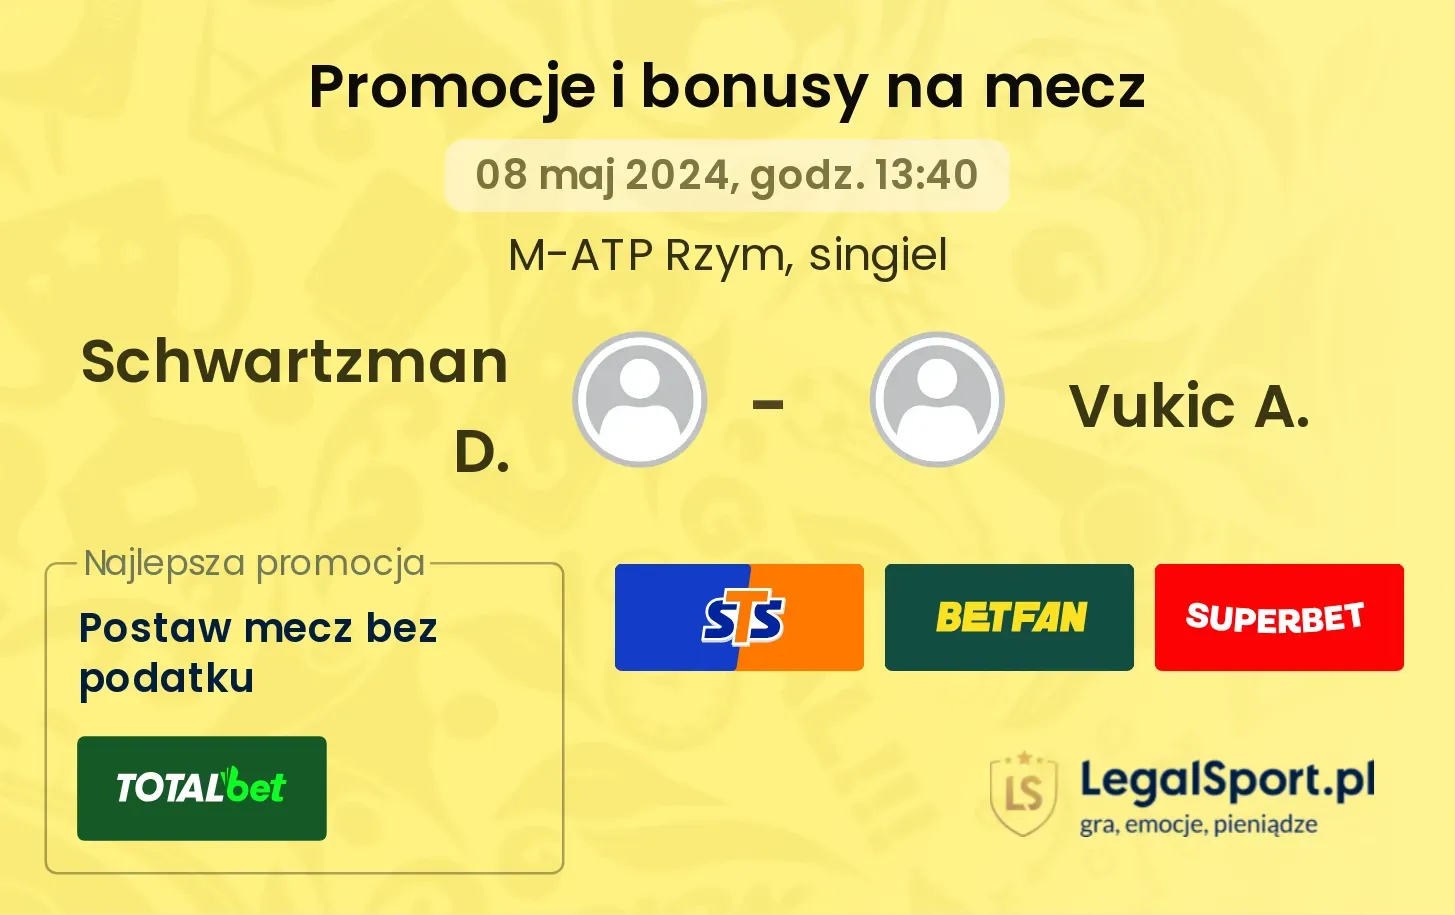 Schwartzman D. - Vukic A. promocje bonusy na mecz